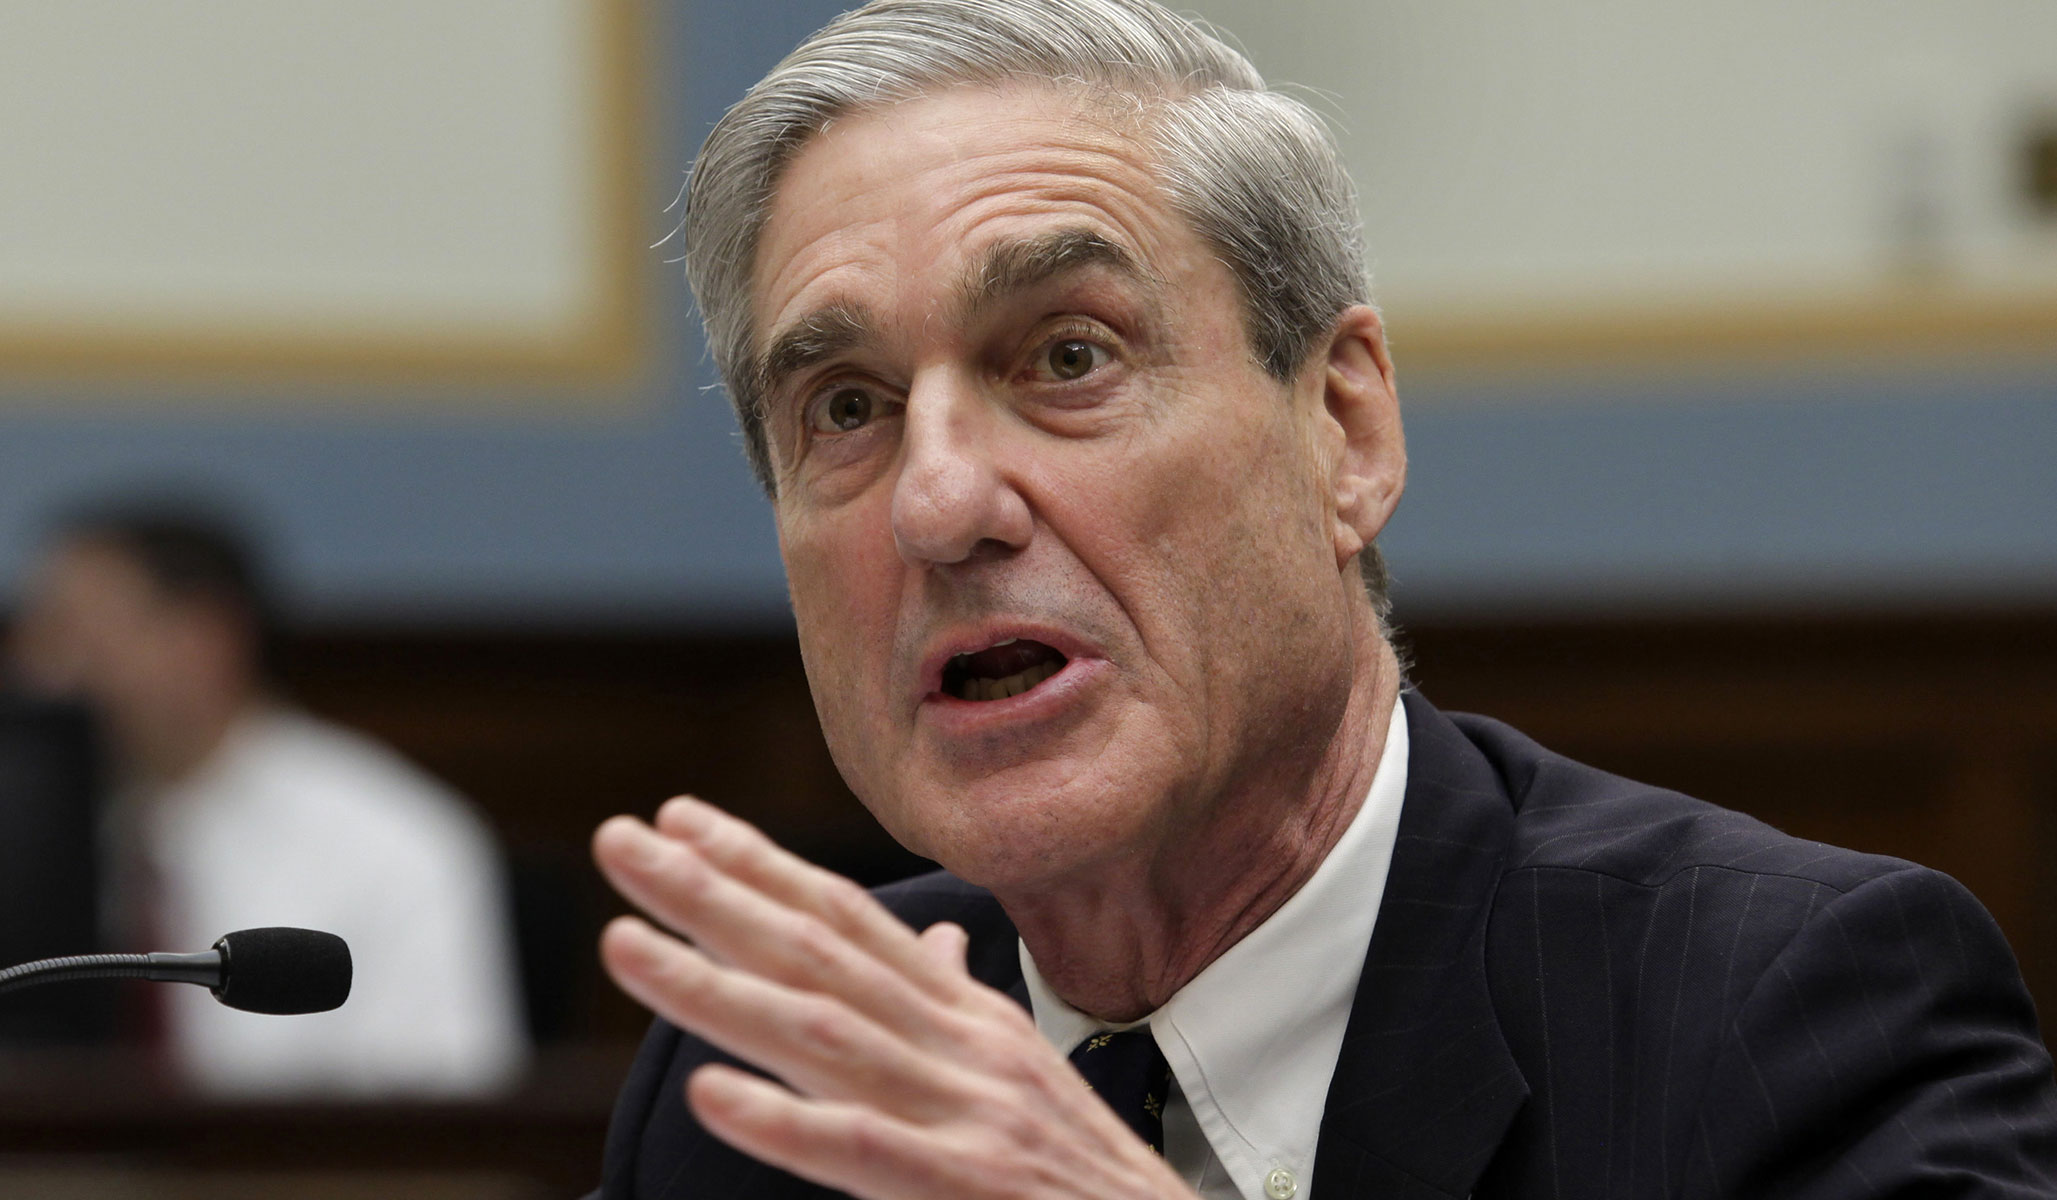 Mueller Investigation on Obstruction IG Report Should End It